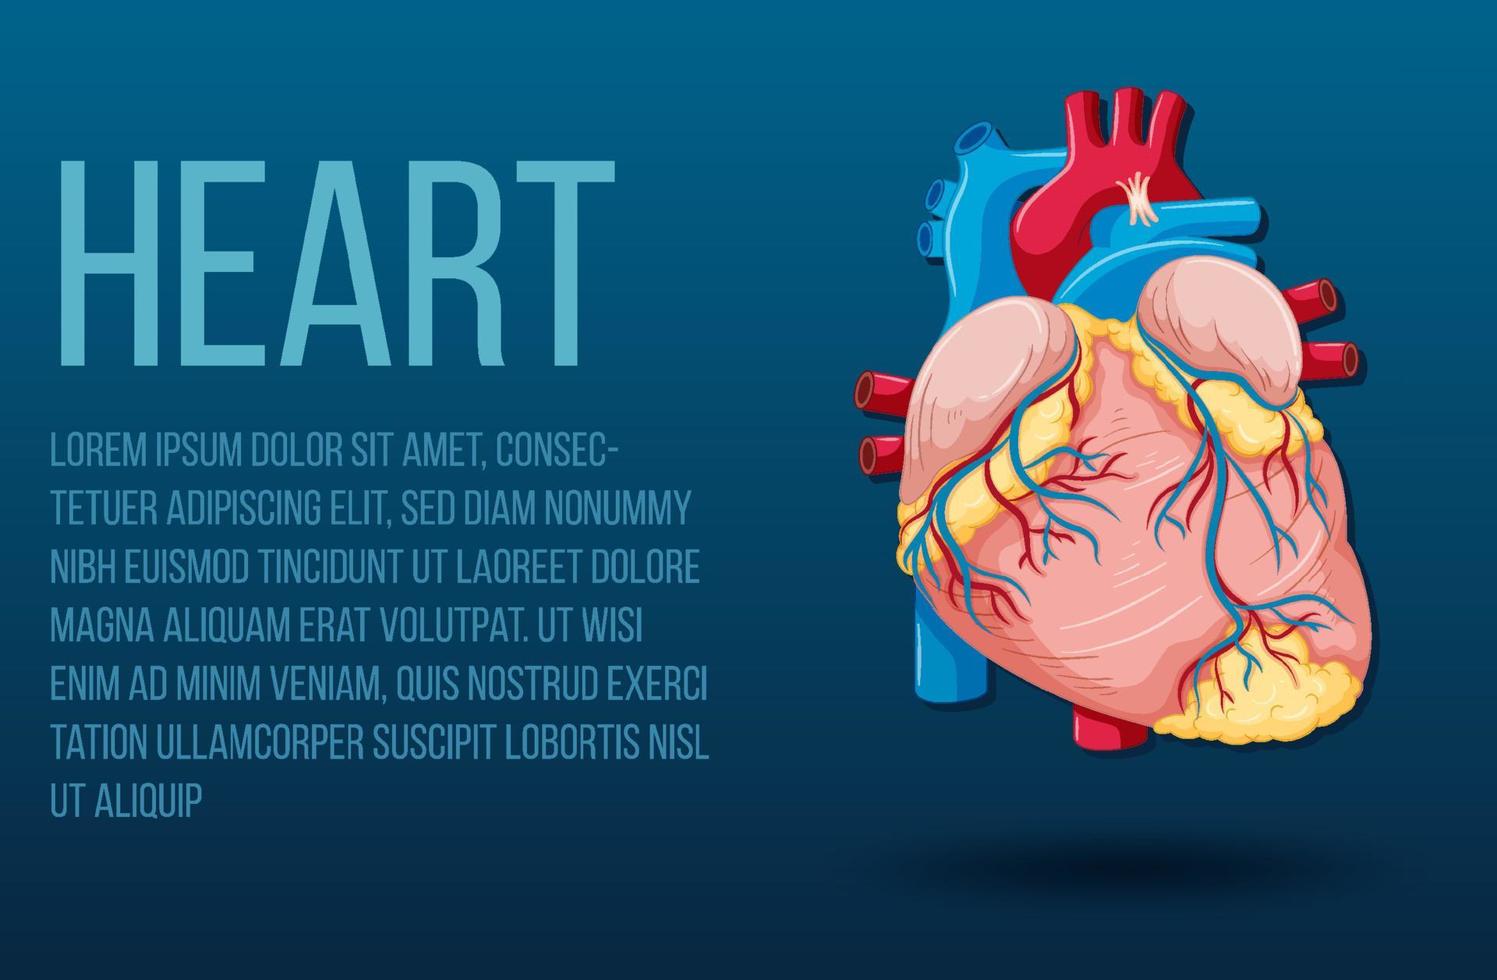 órgão interno humano com coração vetor